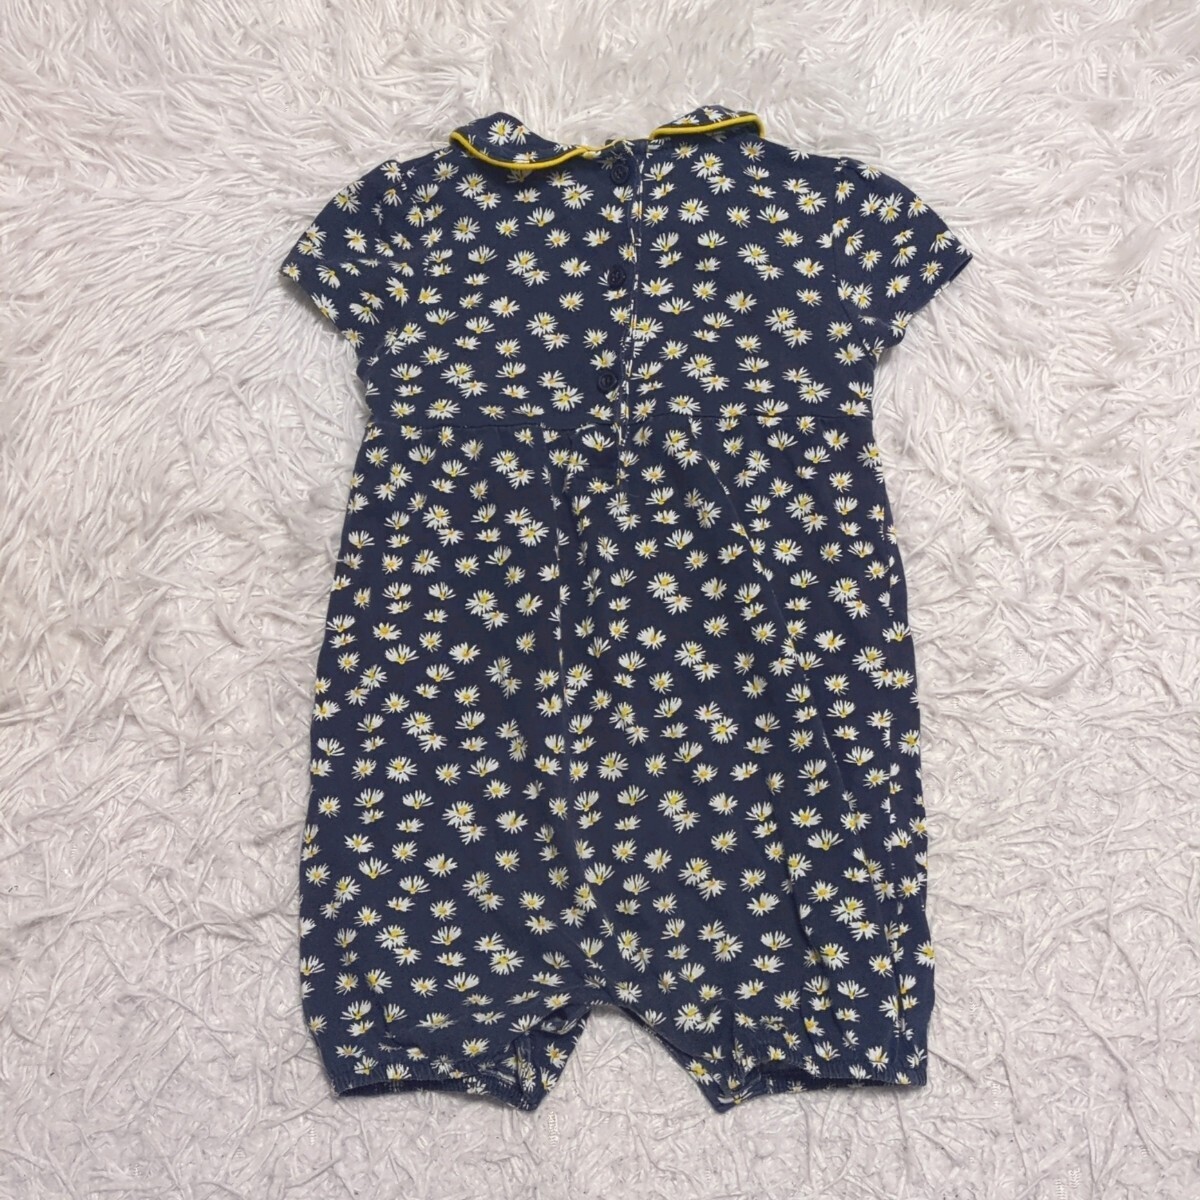 【送料無料】next baby  ネクスト 半袖 ロンパース 9-12month 80cmぐらい 小花柄 ネイビー 子供服の画像2